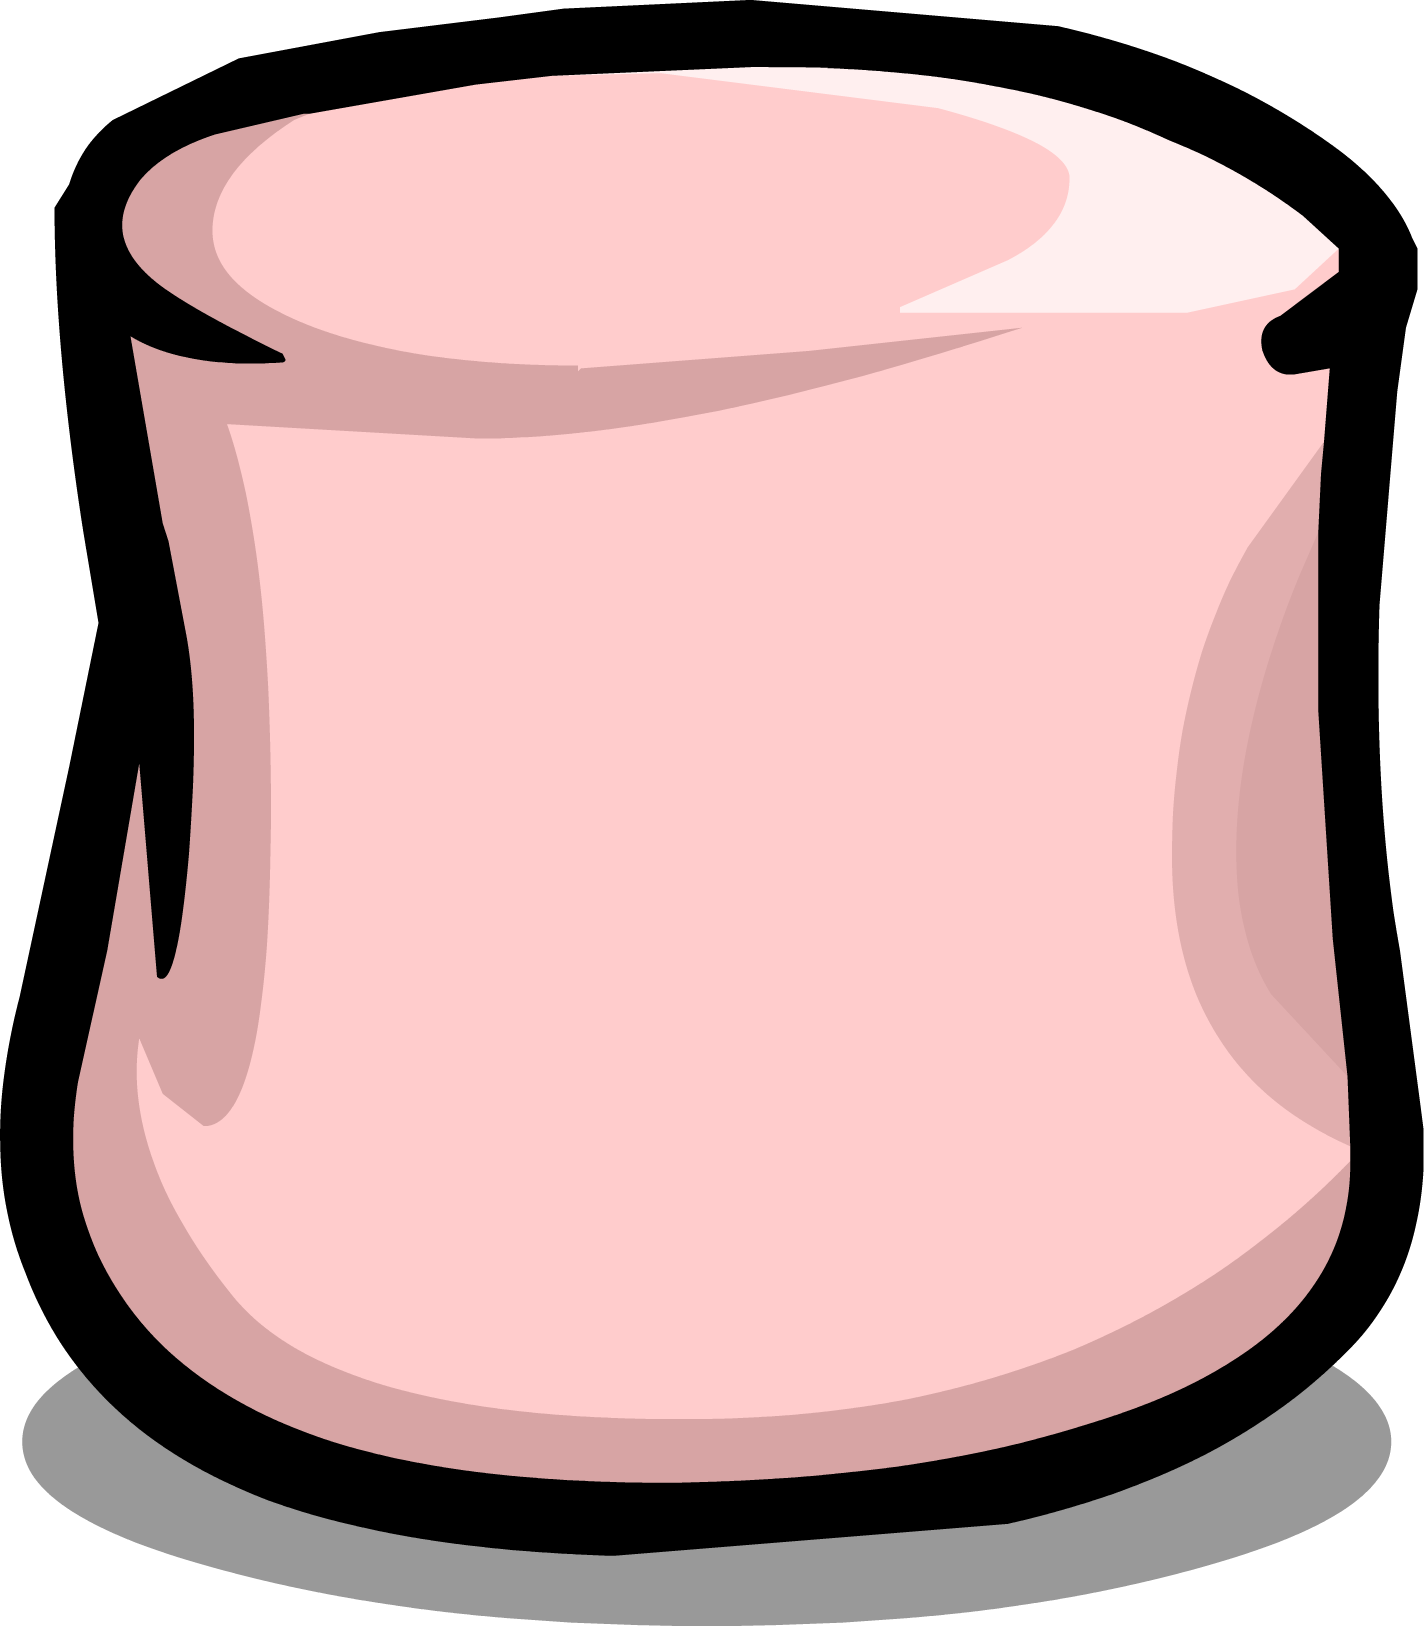 Pink Marshmallow Cartoon